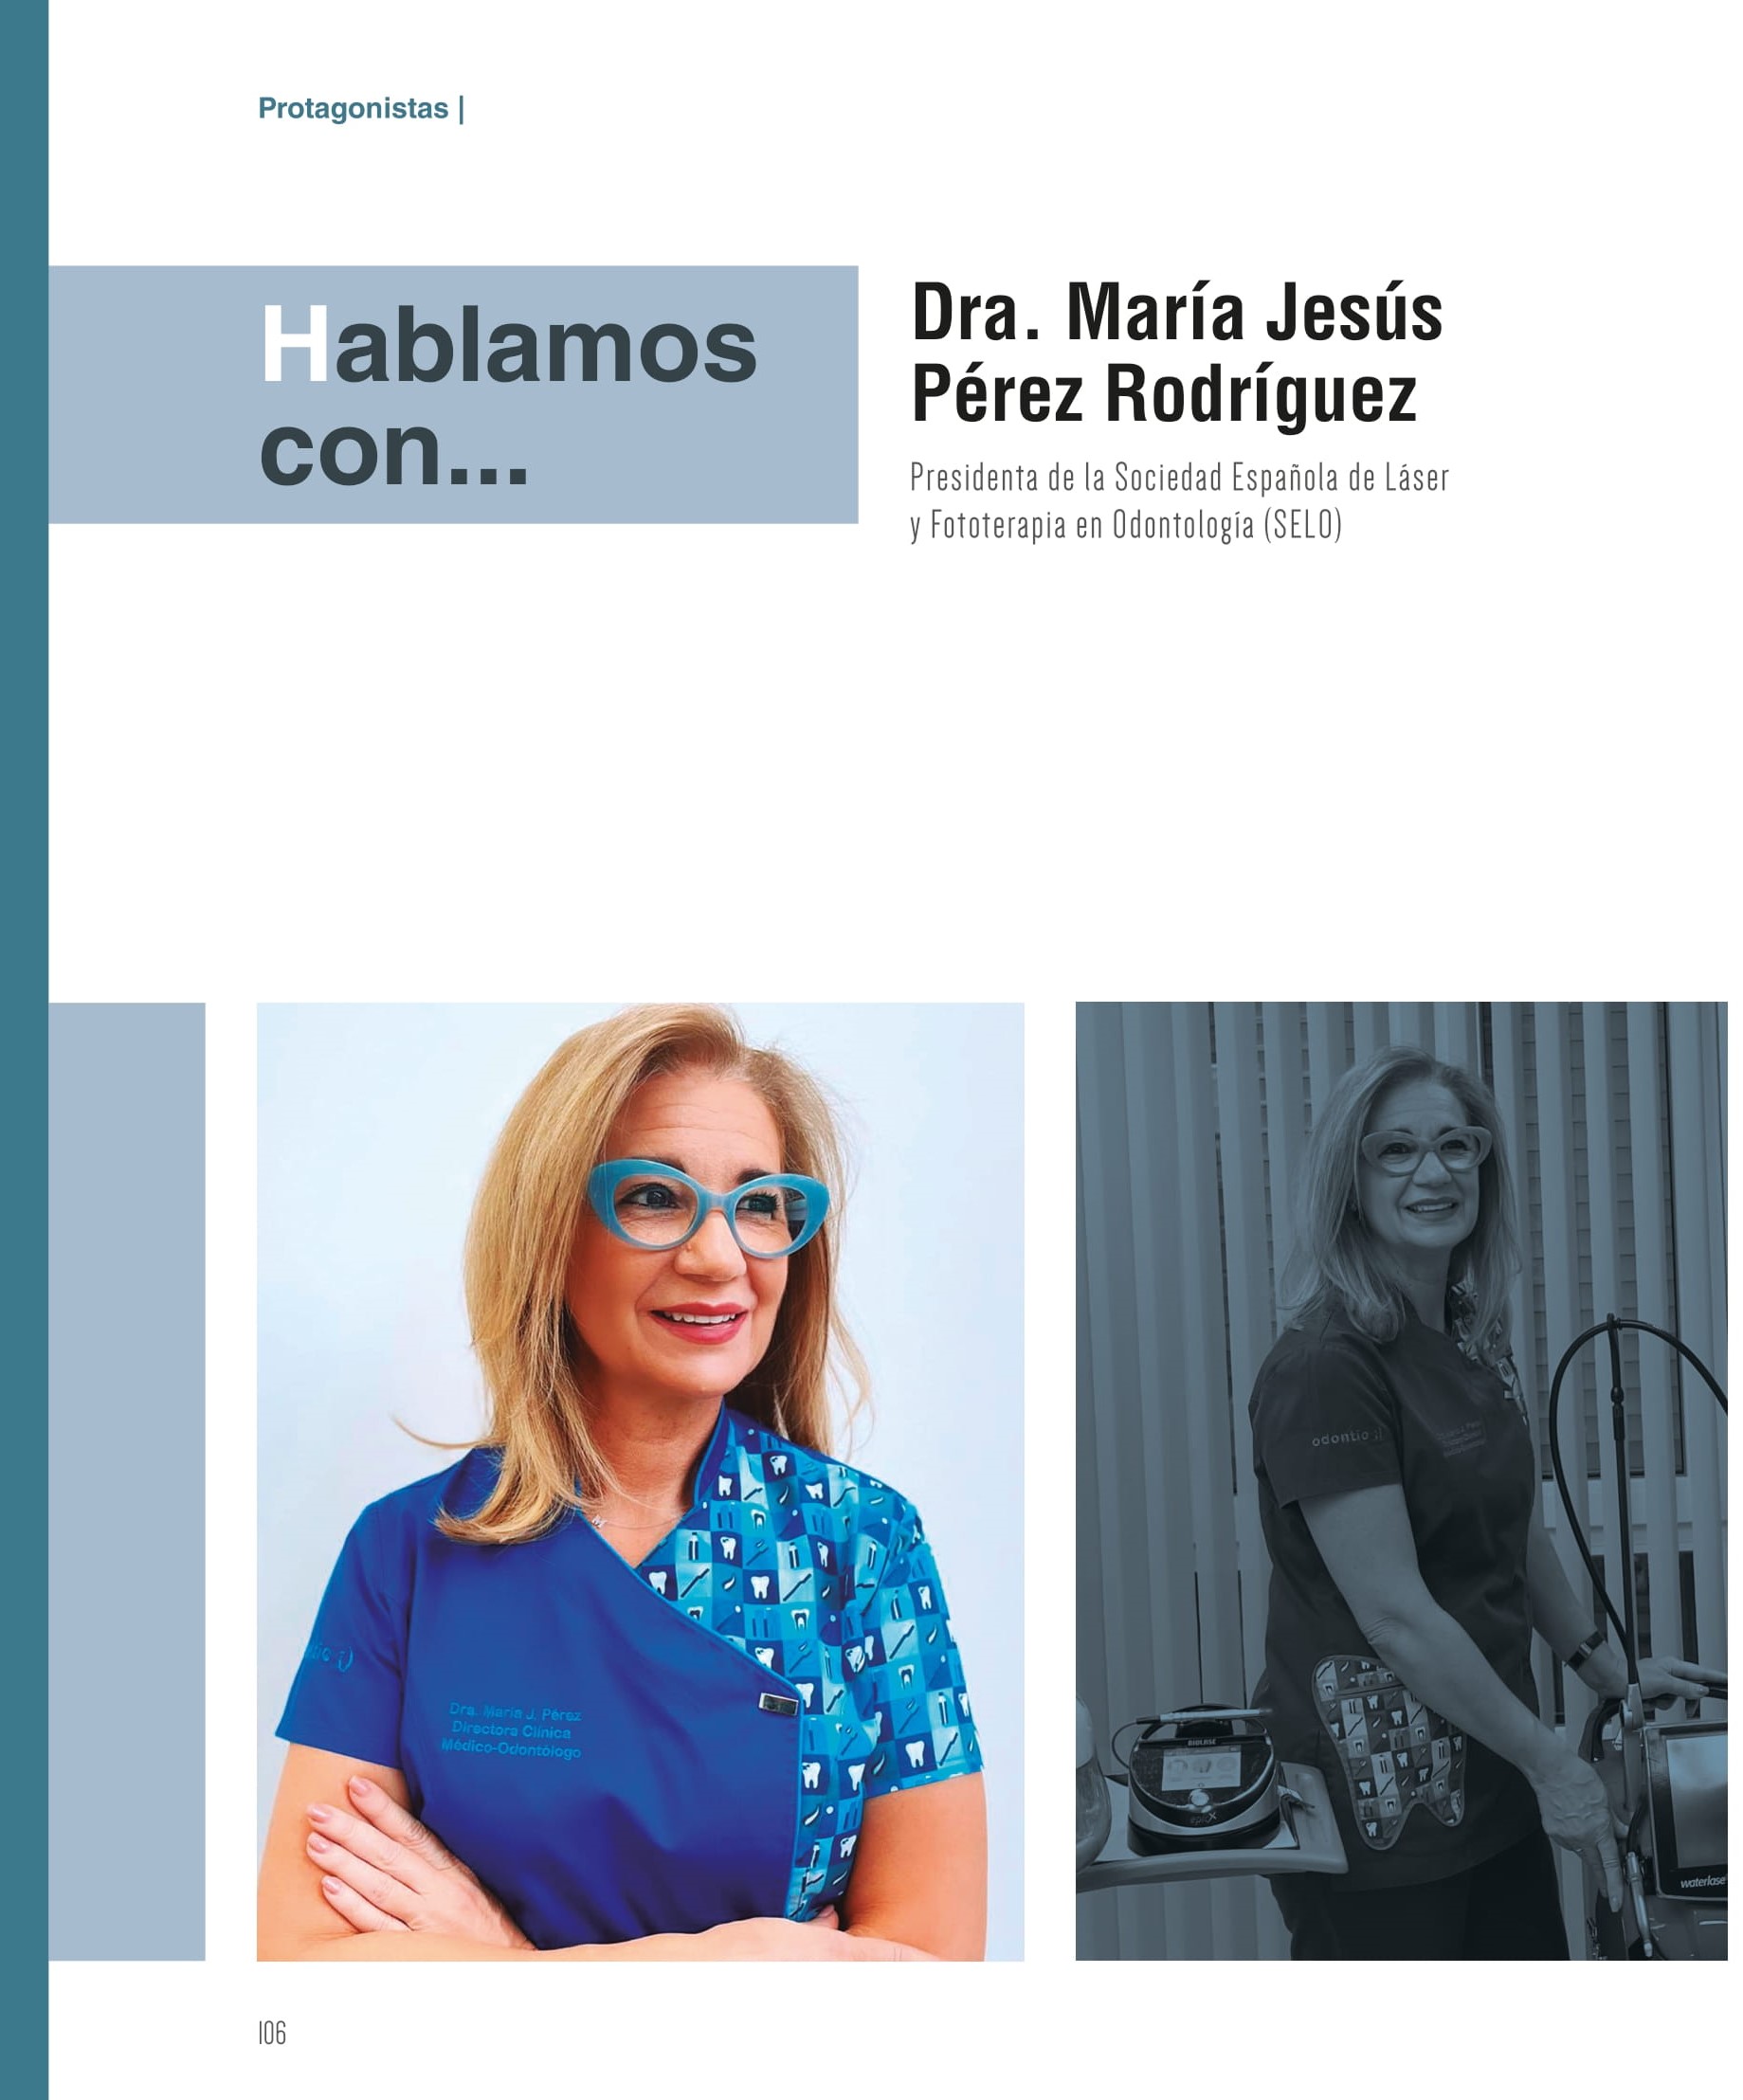 entrevista a la Dra. María J. Pérez, experta en el uso de tecnologías láser y nueva presidenta de la SELO